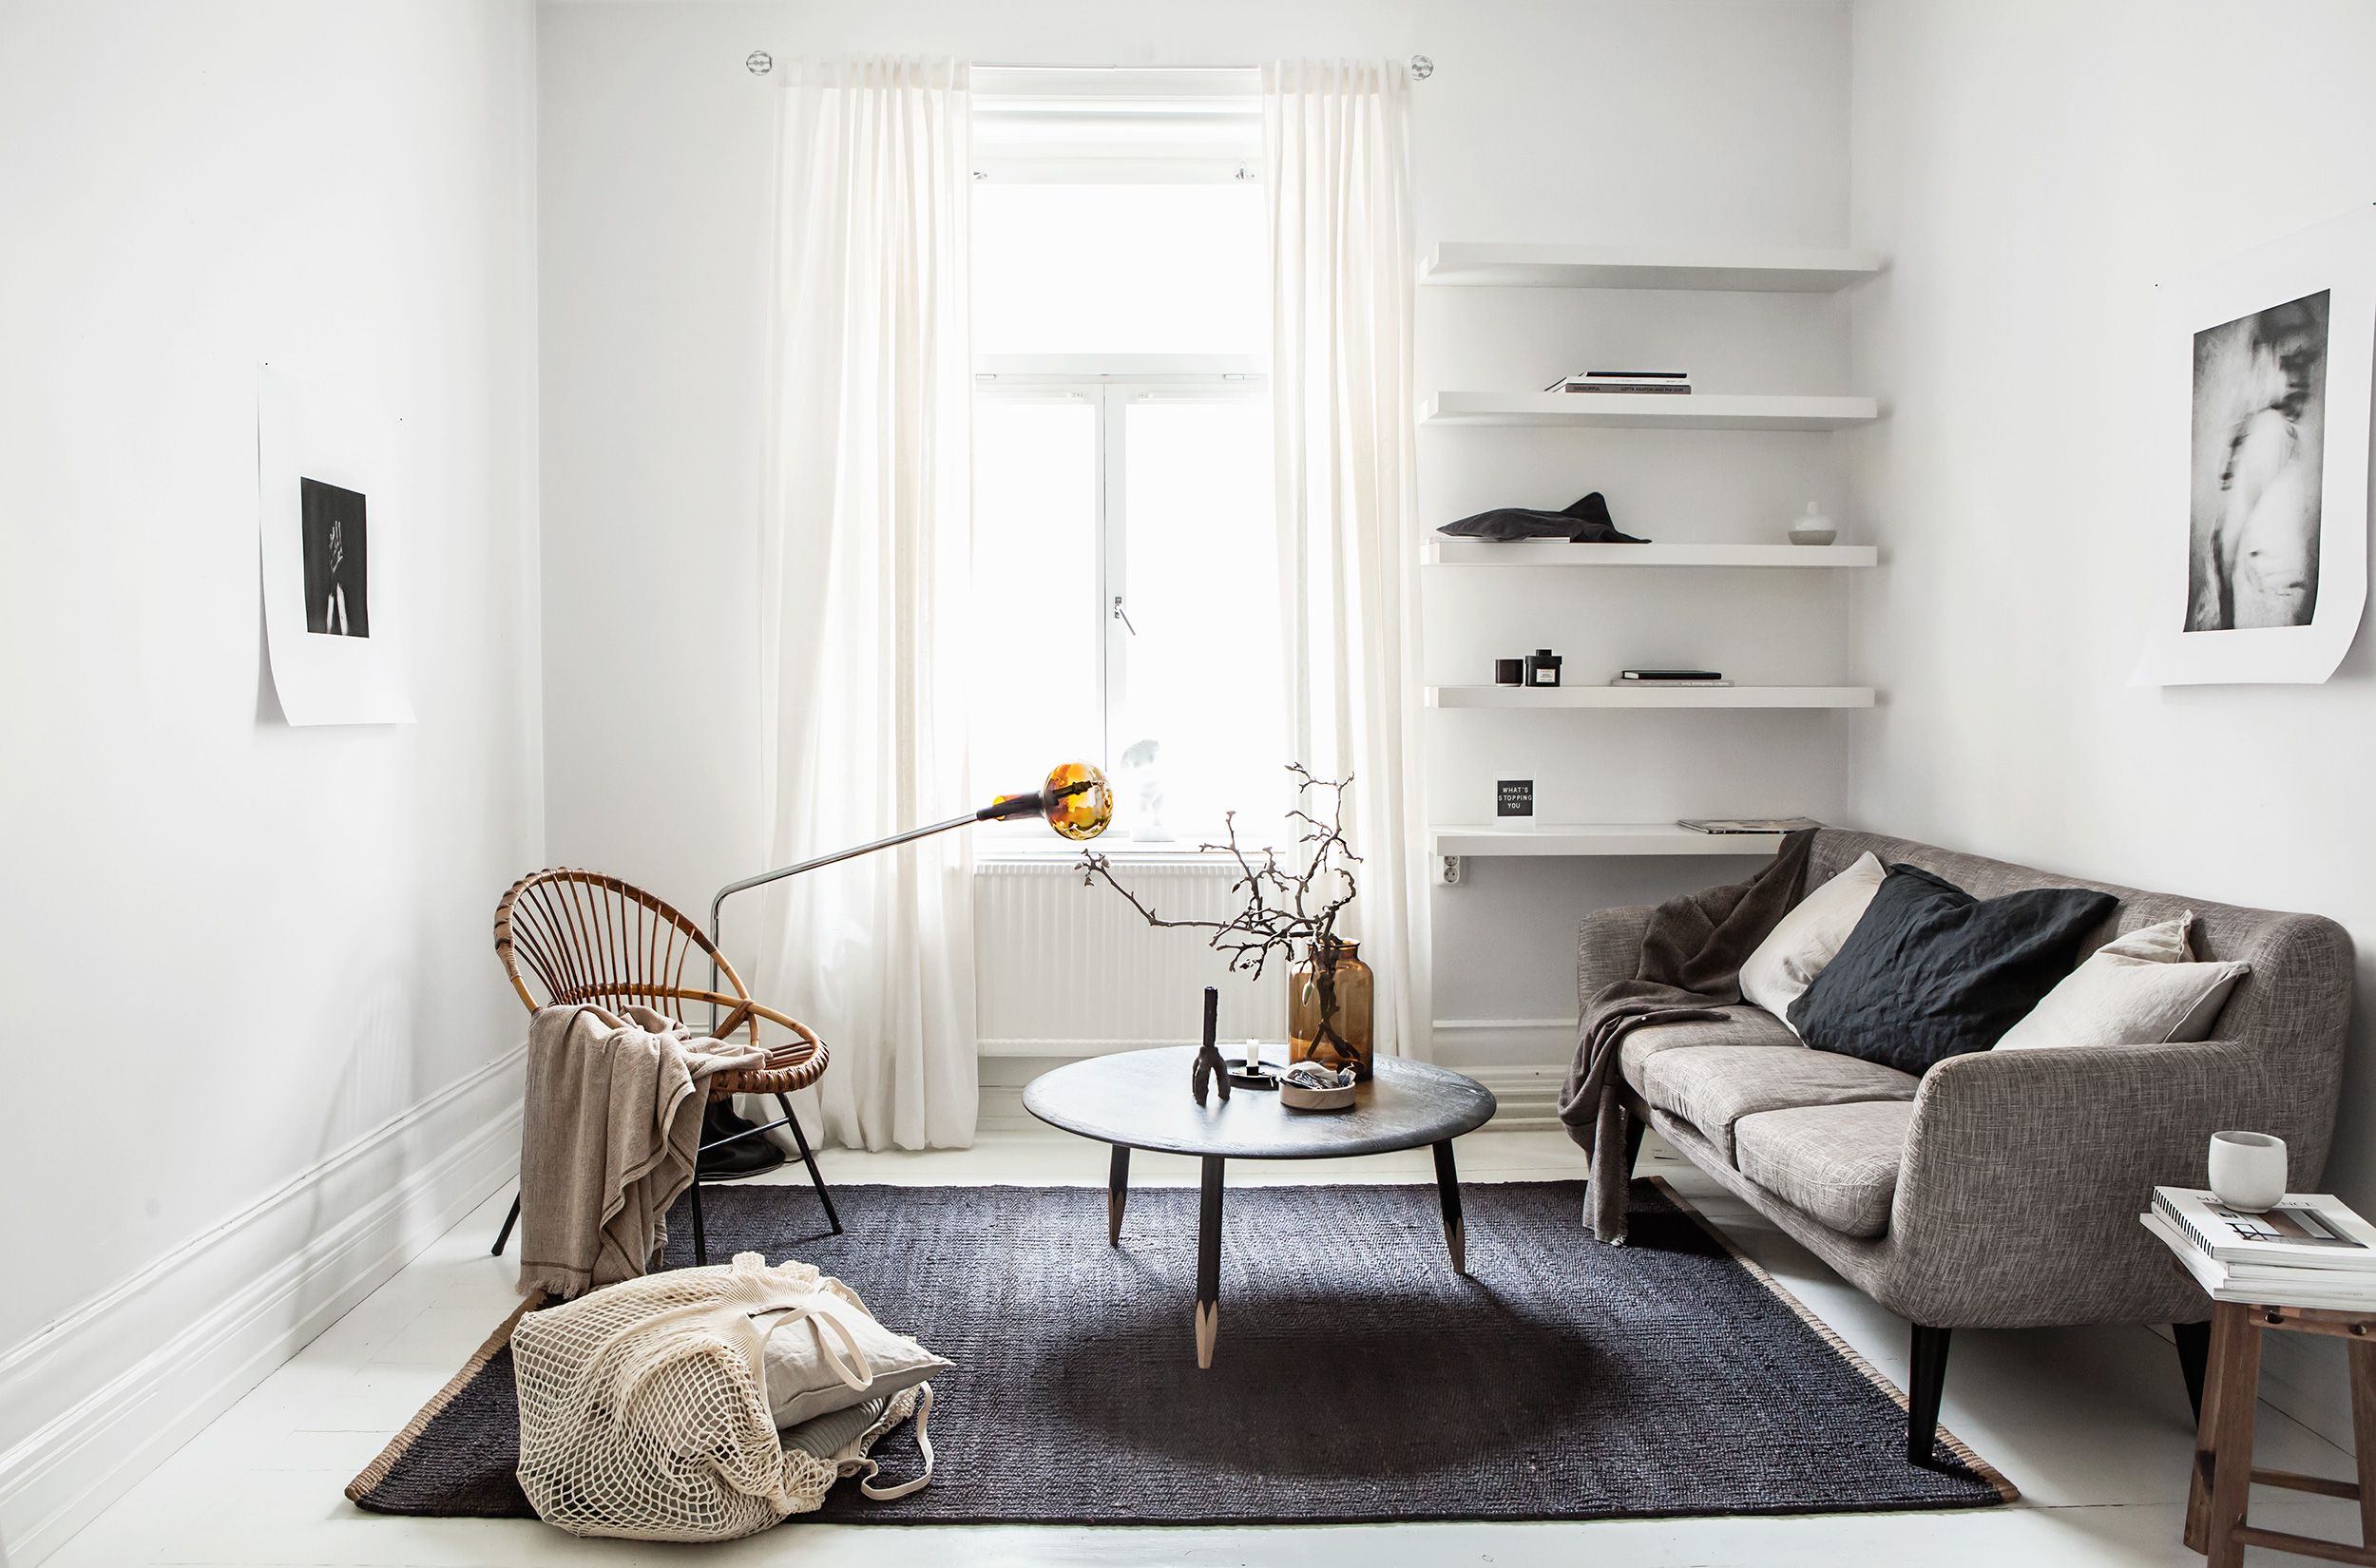 modern minimalist interior design style